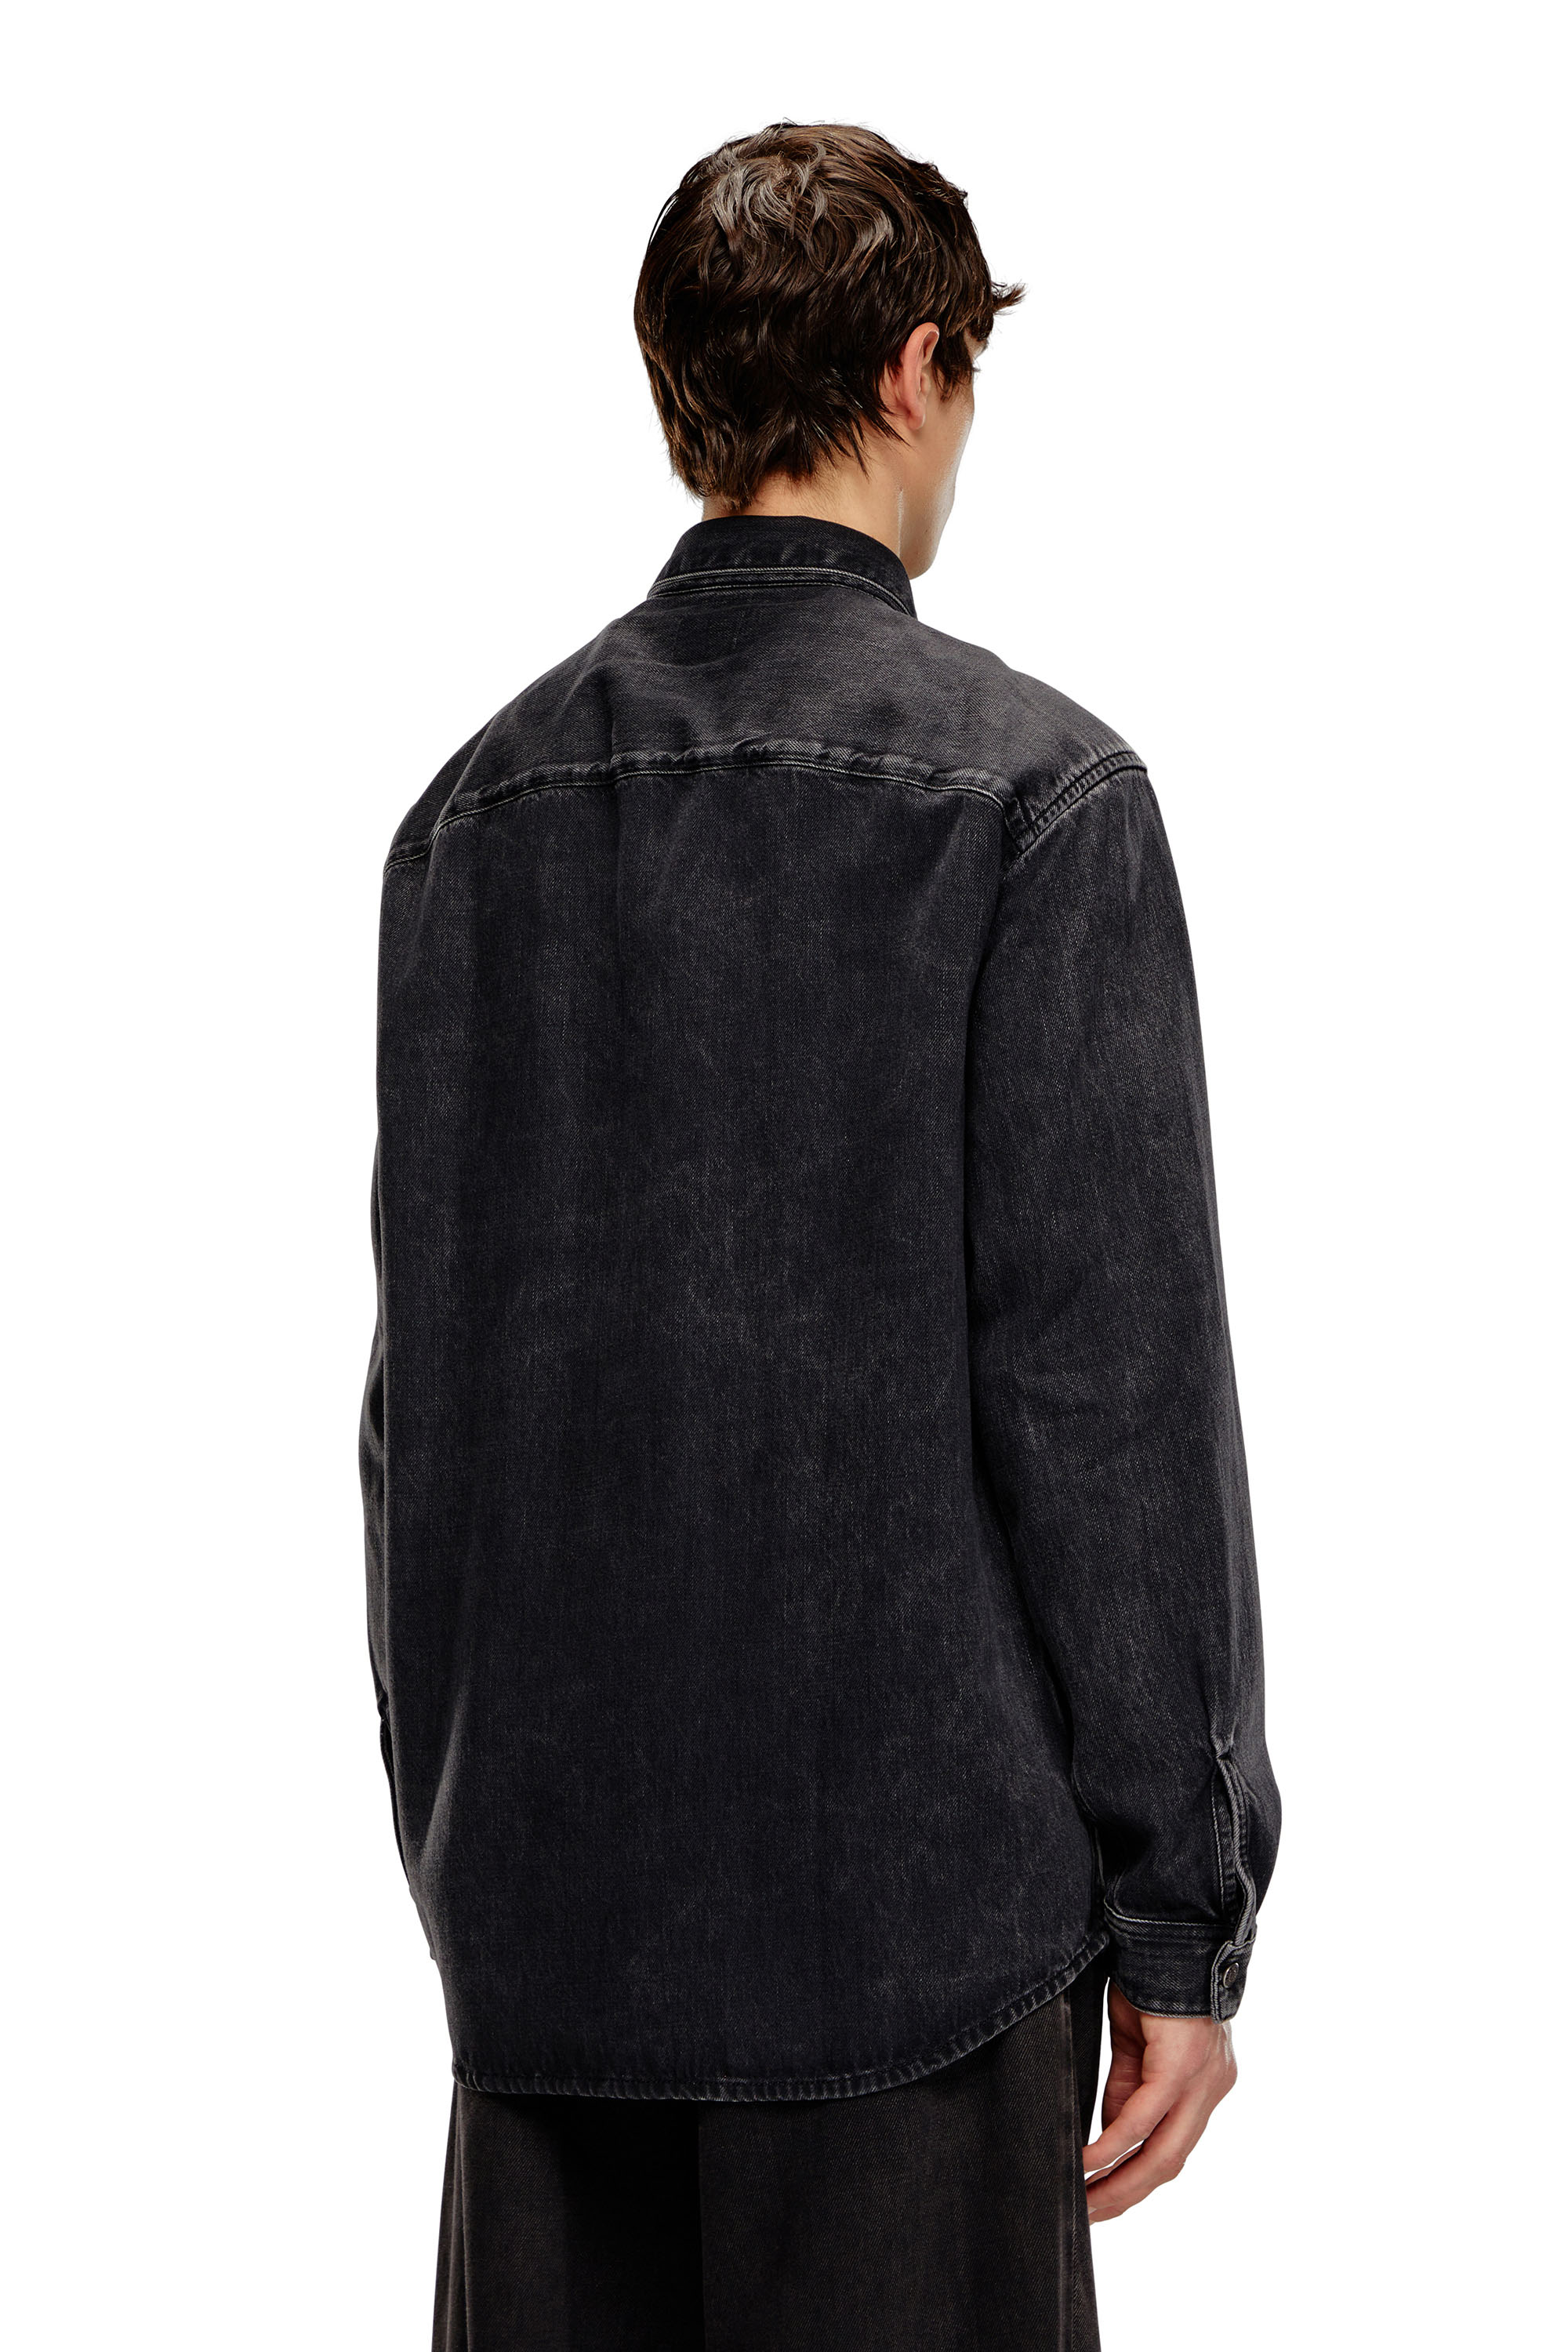 Diesel - D-SIMPLY, Man Shirt in Tencel denim in Black - Image 2